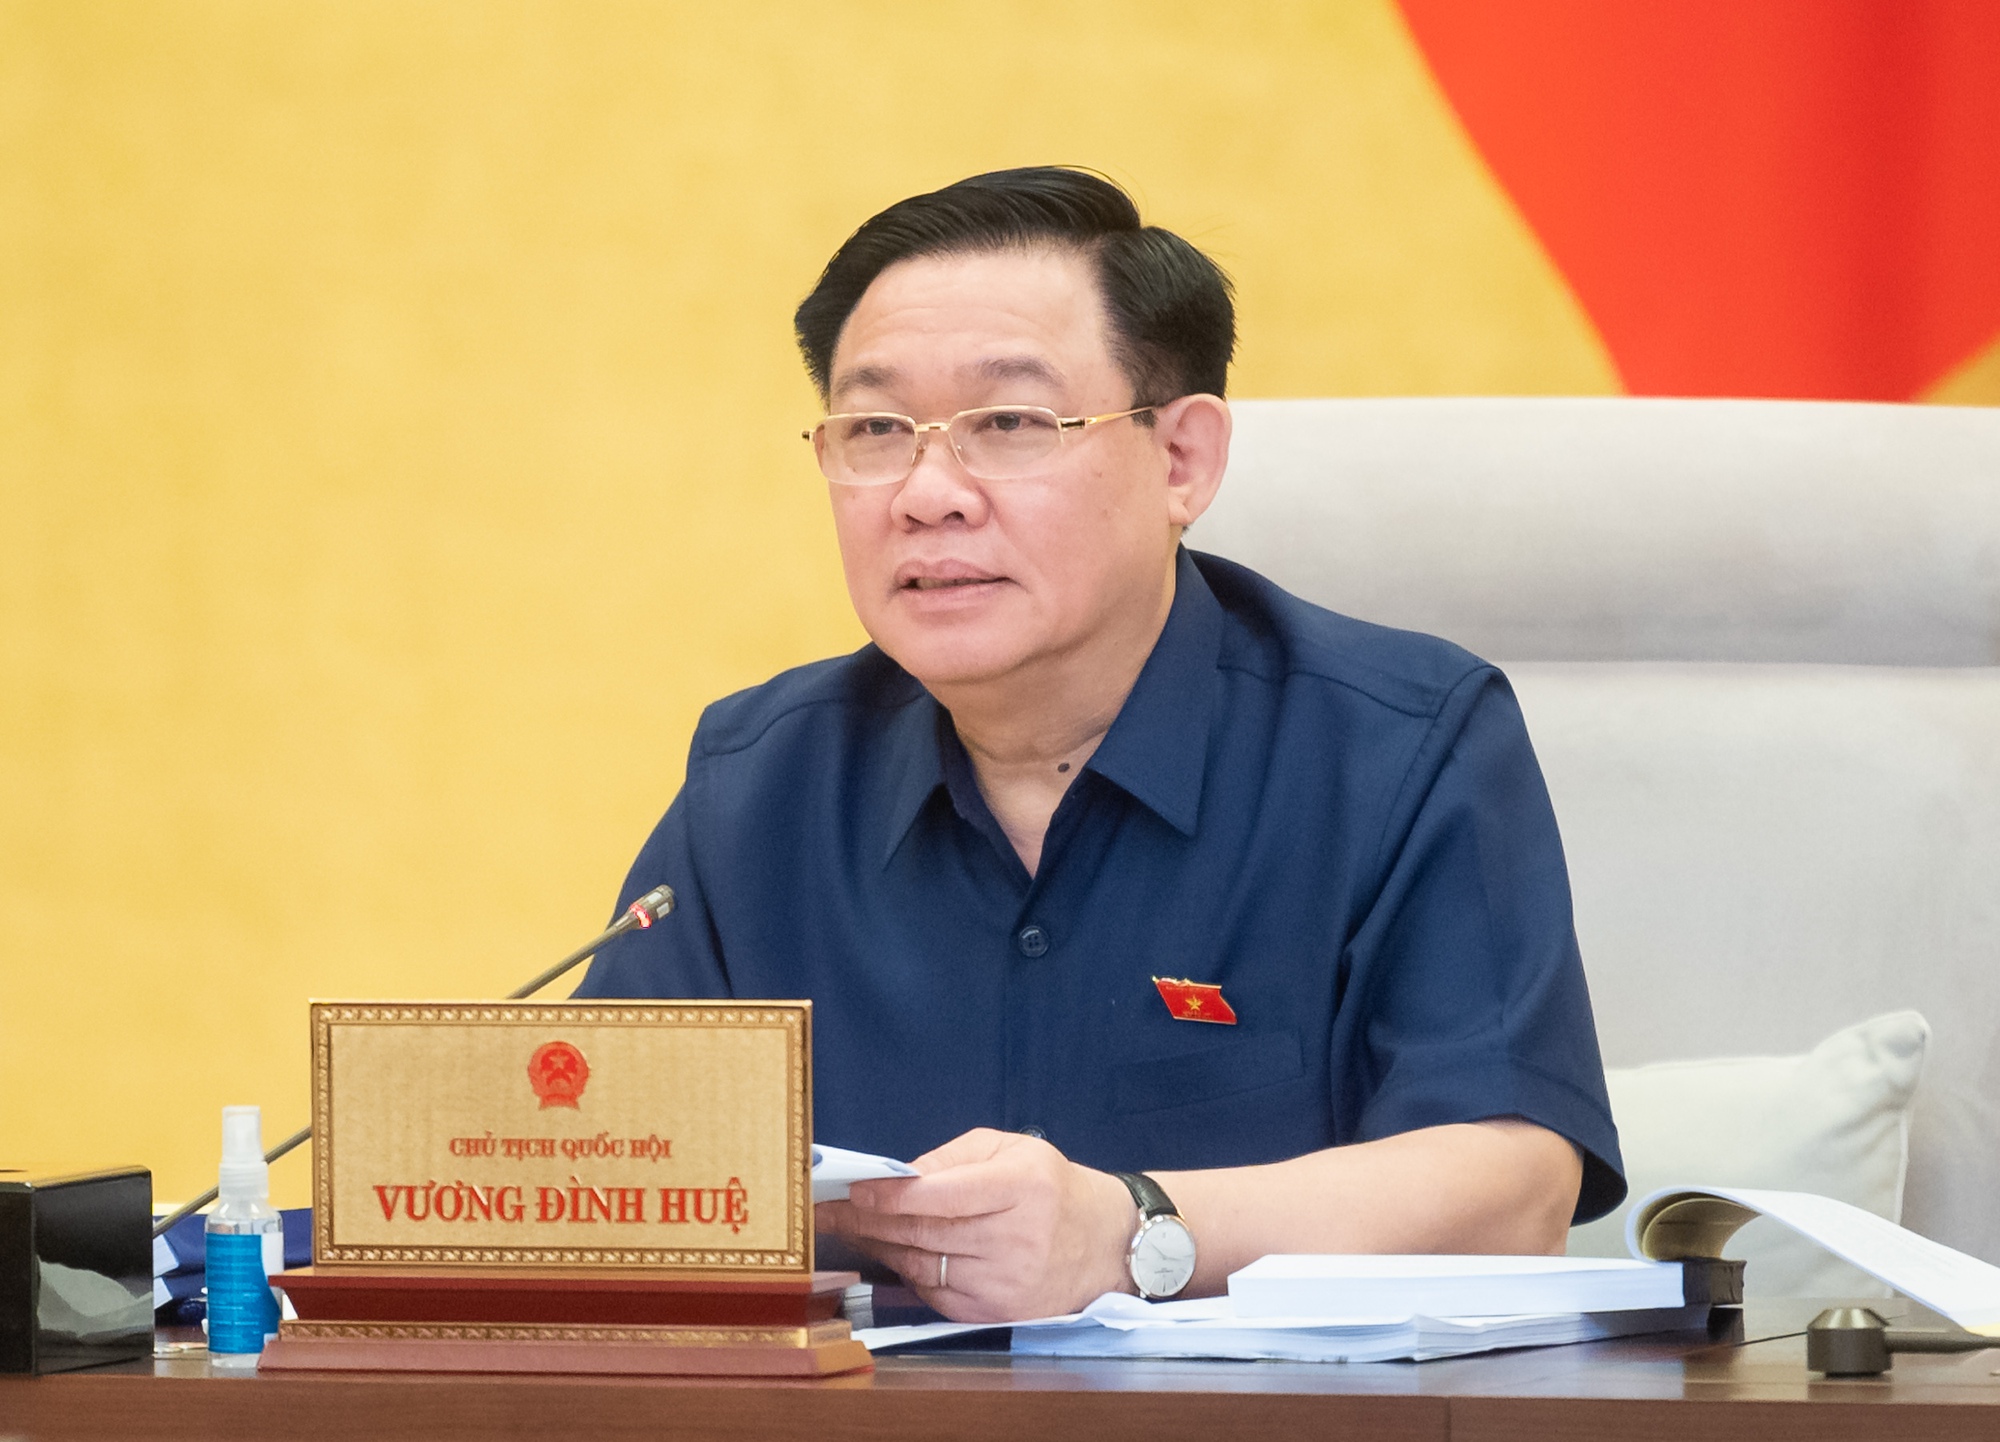 Chủ tịch Quốc hội Vương Đình Huệ đề xuất thêm phương án rút bảo hiểm xã hội một lần - Ảnh 1.